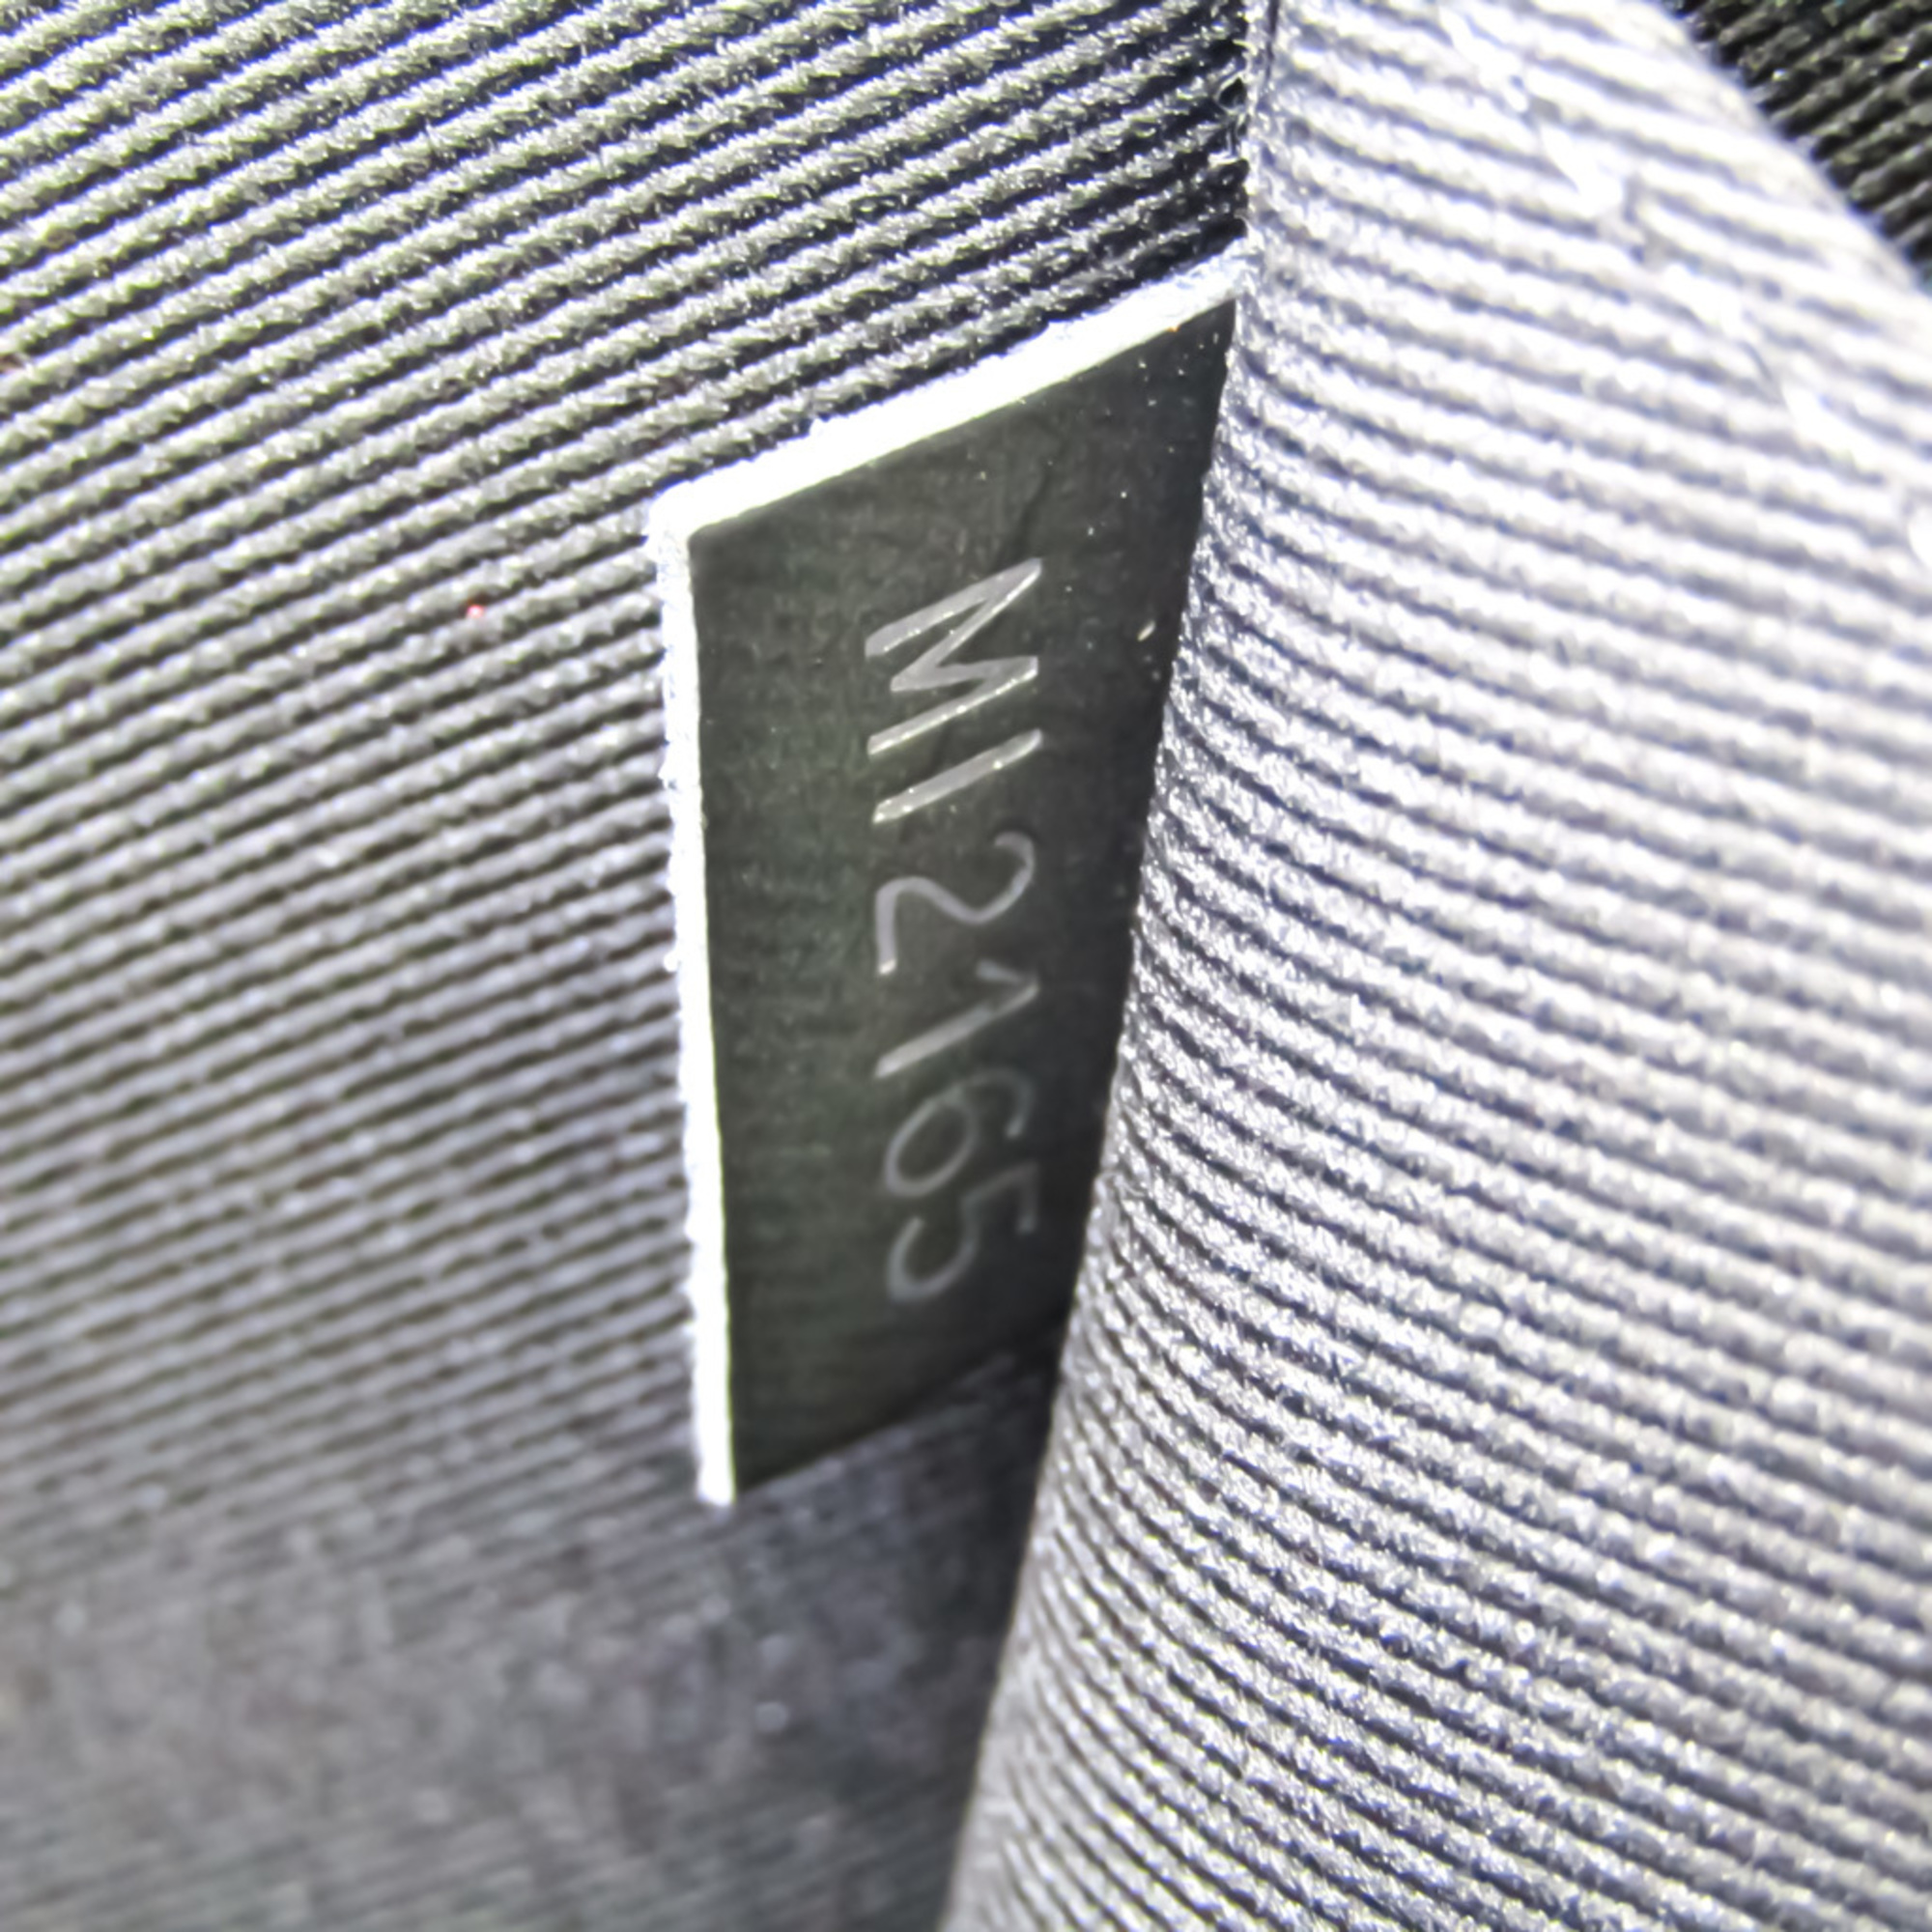 ルイ・ヴィトン(Louis Vuitton) ダミエ・グラフィット ポシェットジュールGM クリストファーネメス M61232 メンズ クラッチバッグ  ダミエ・グラフィット | eLADY Globazone